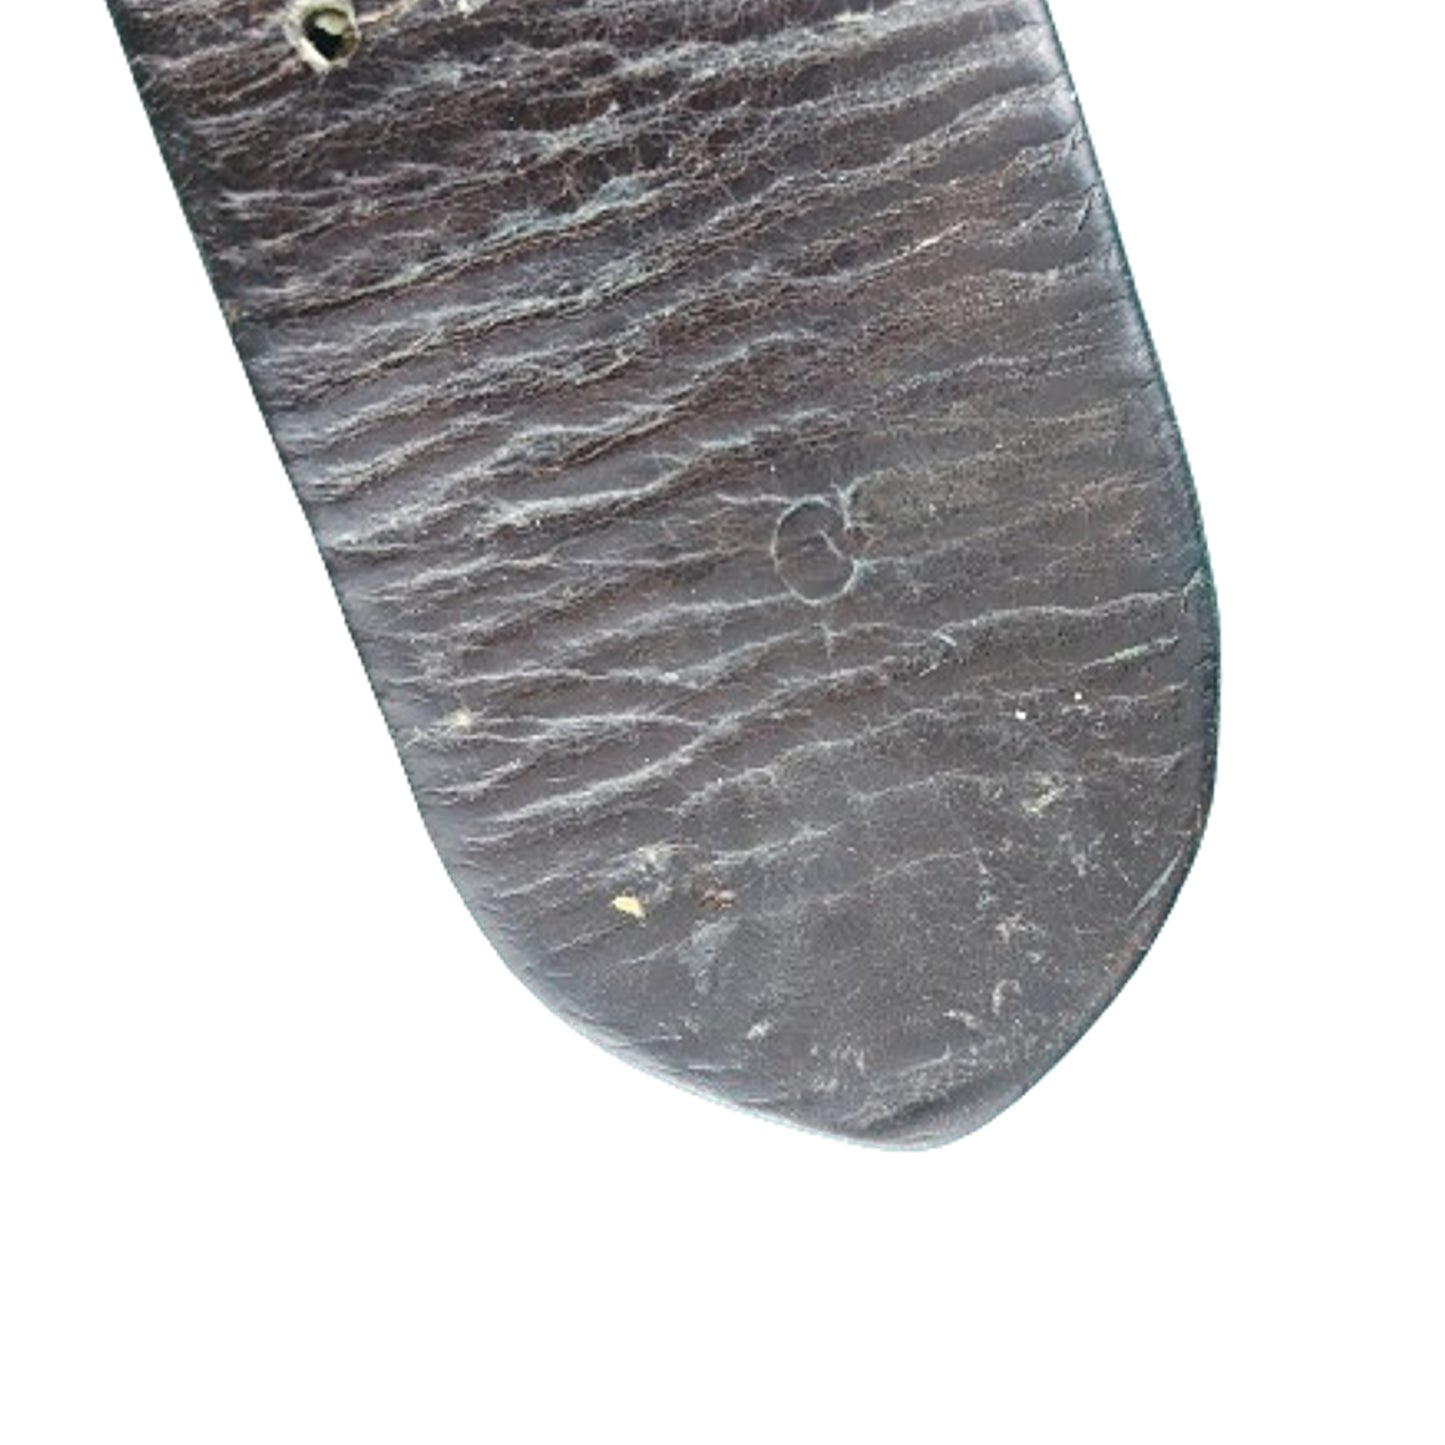 WW1 Canadian Pattern 1916 Leather Waist Belt